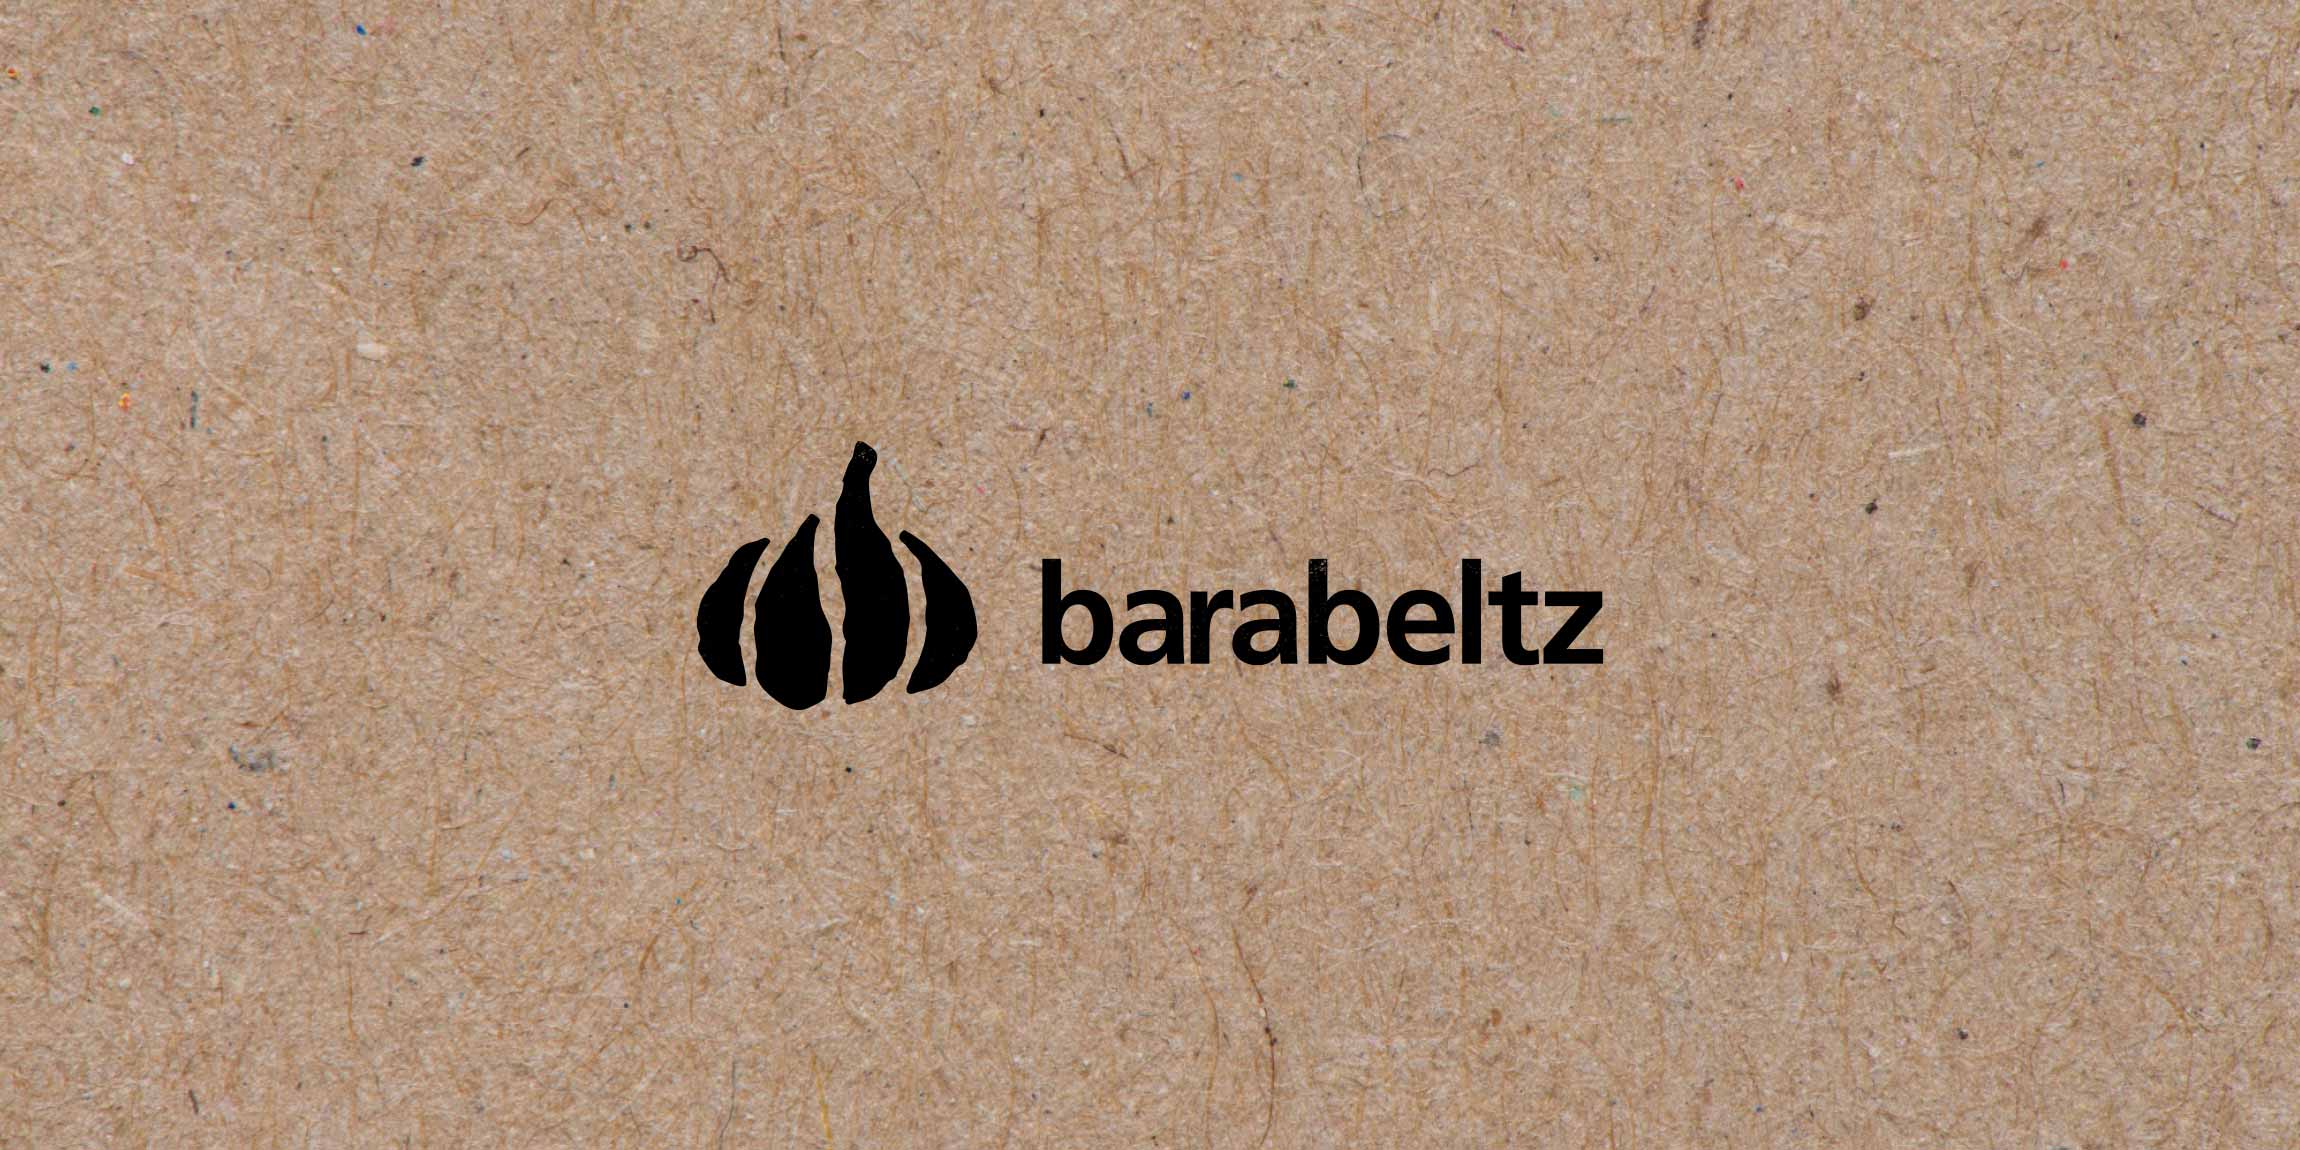 Barabeltz Branding